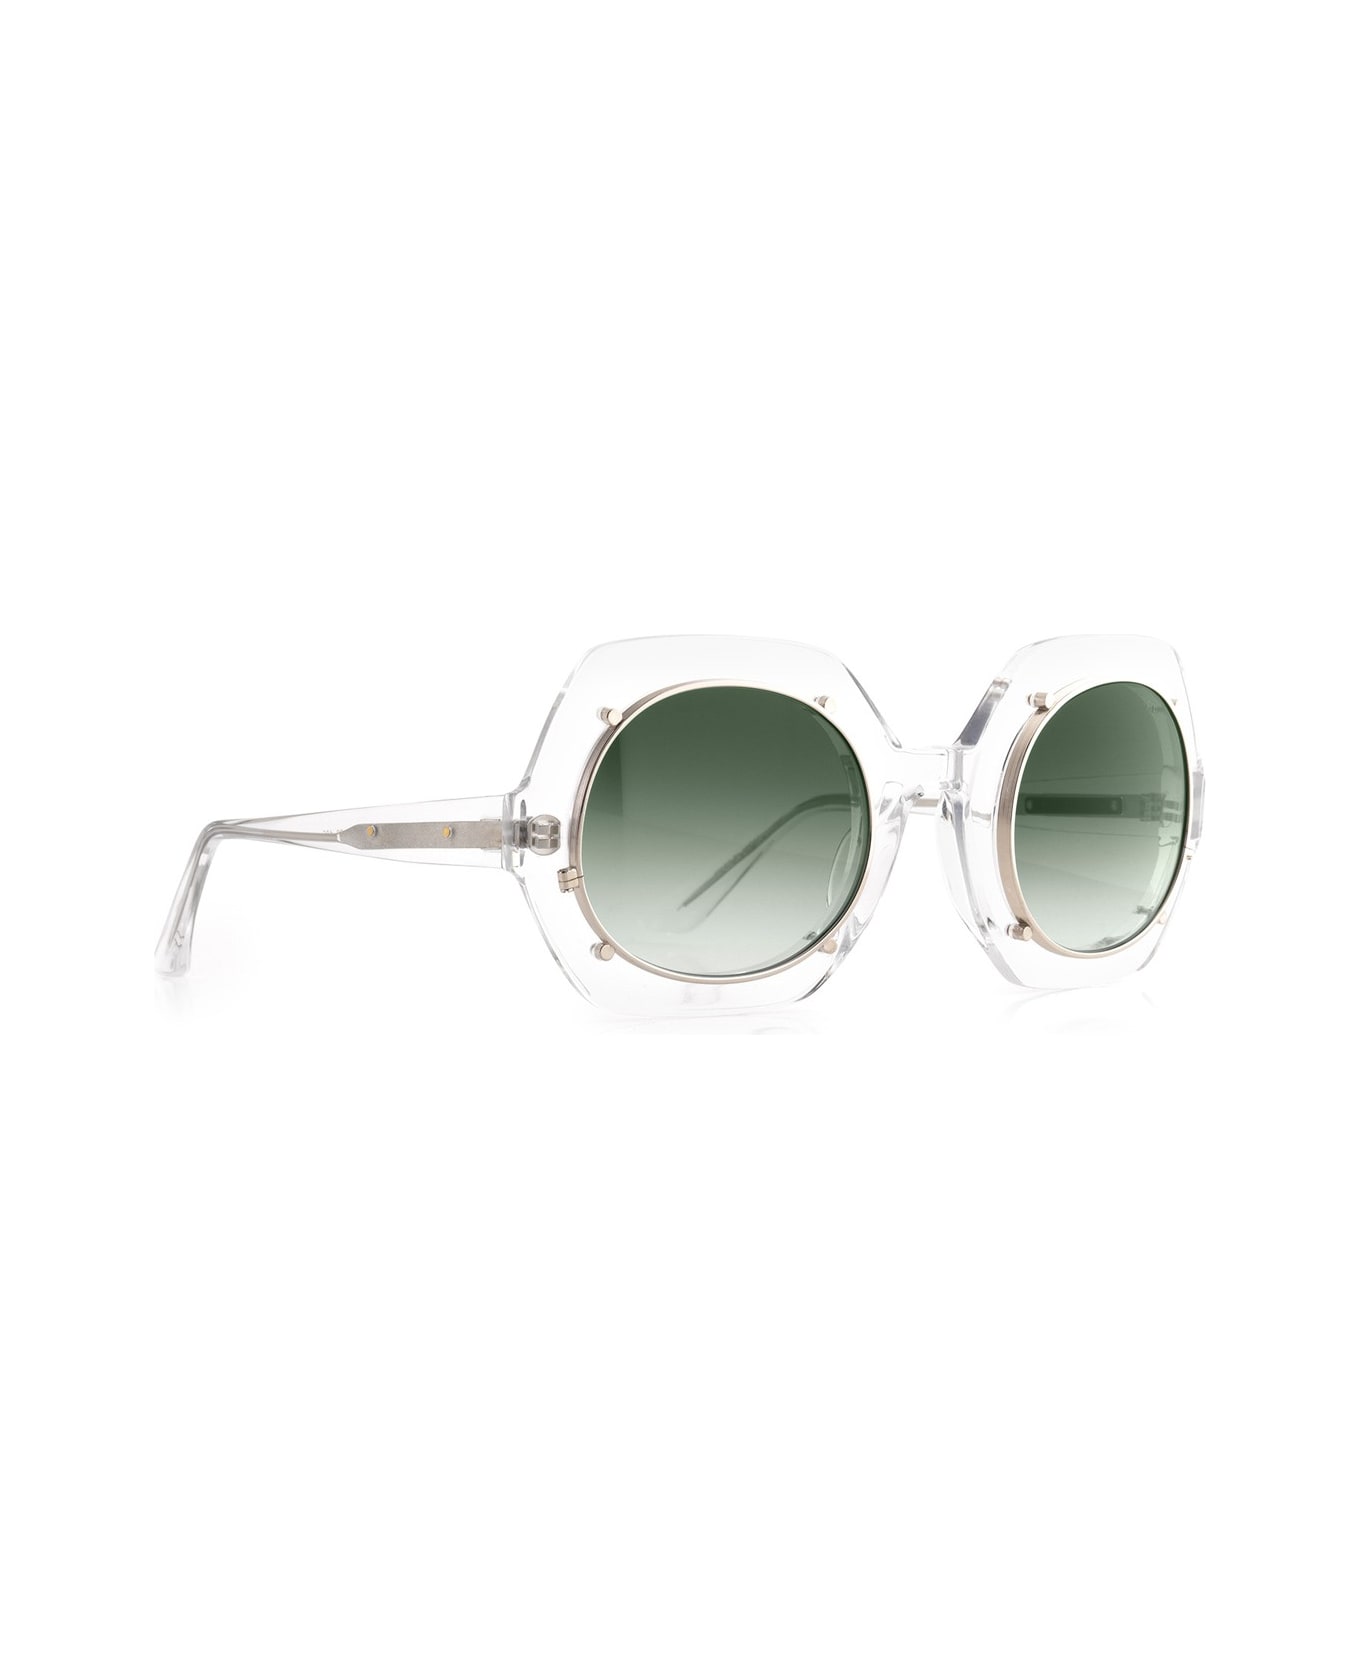 Robert La Roche Rlr S283 Sunglasses - Trasparente